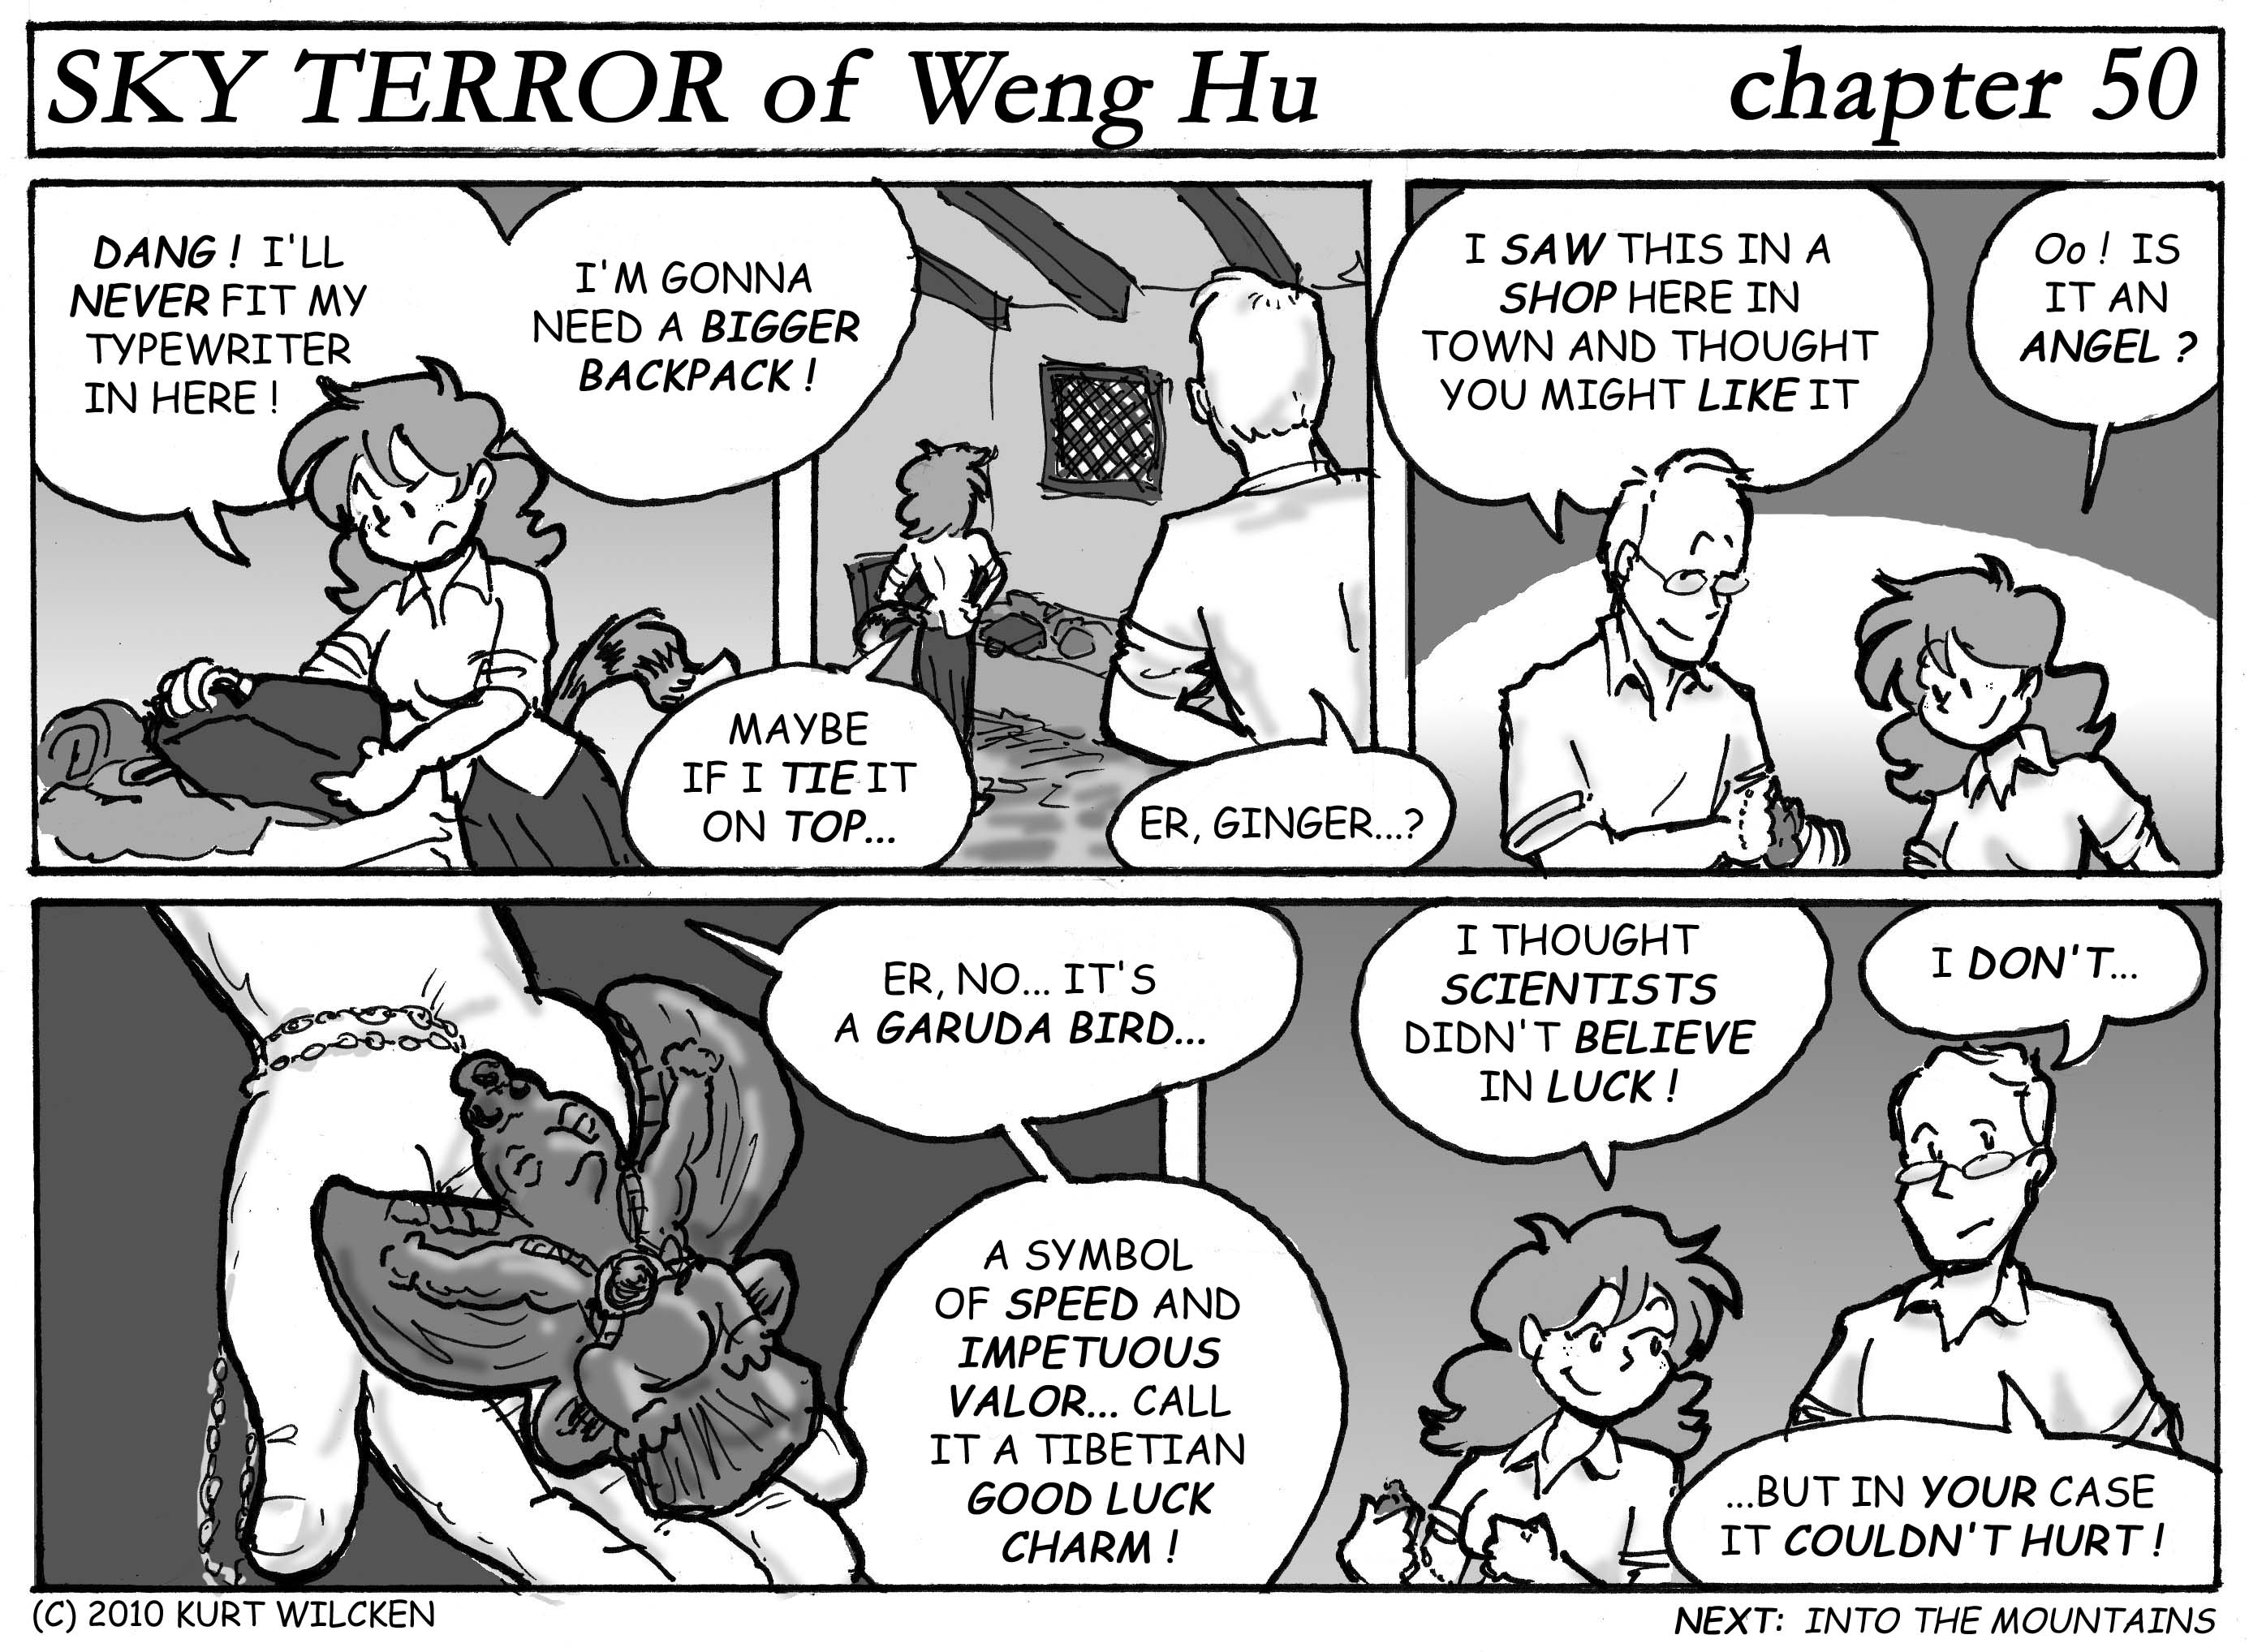 SKY TERROR of Weng Hu:  Chapter 50 — A Little Souvenir